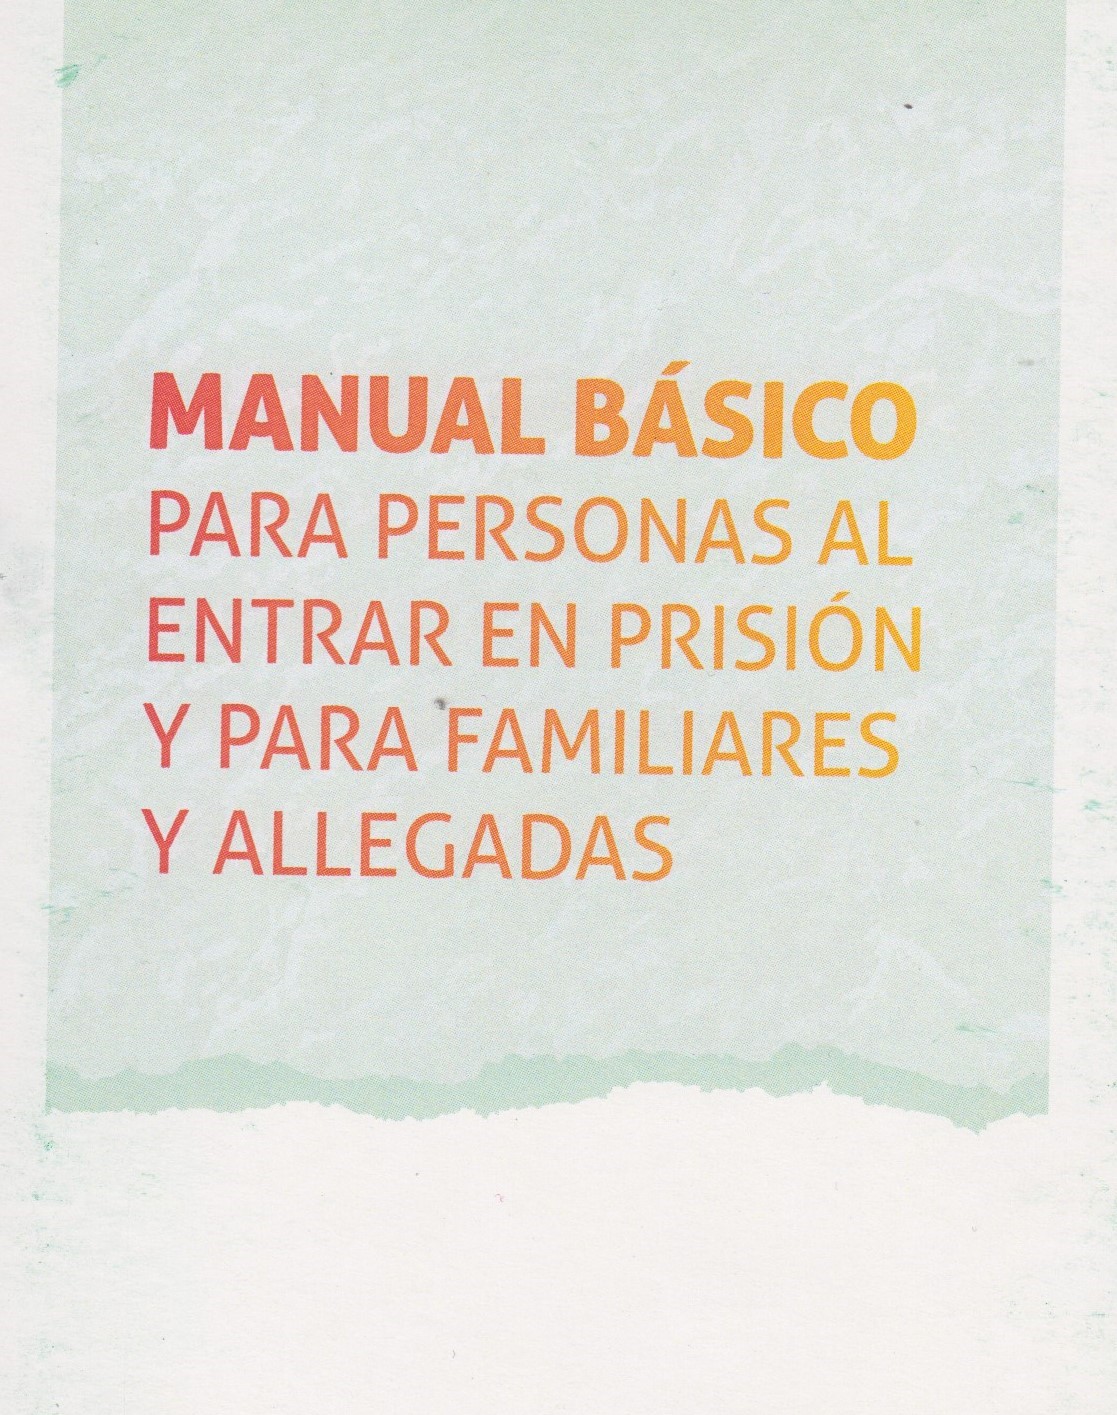 Manual básico para personas al entrar en prisión y para familiares y allegadas